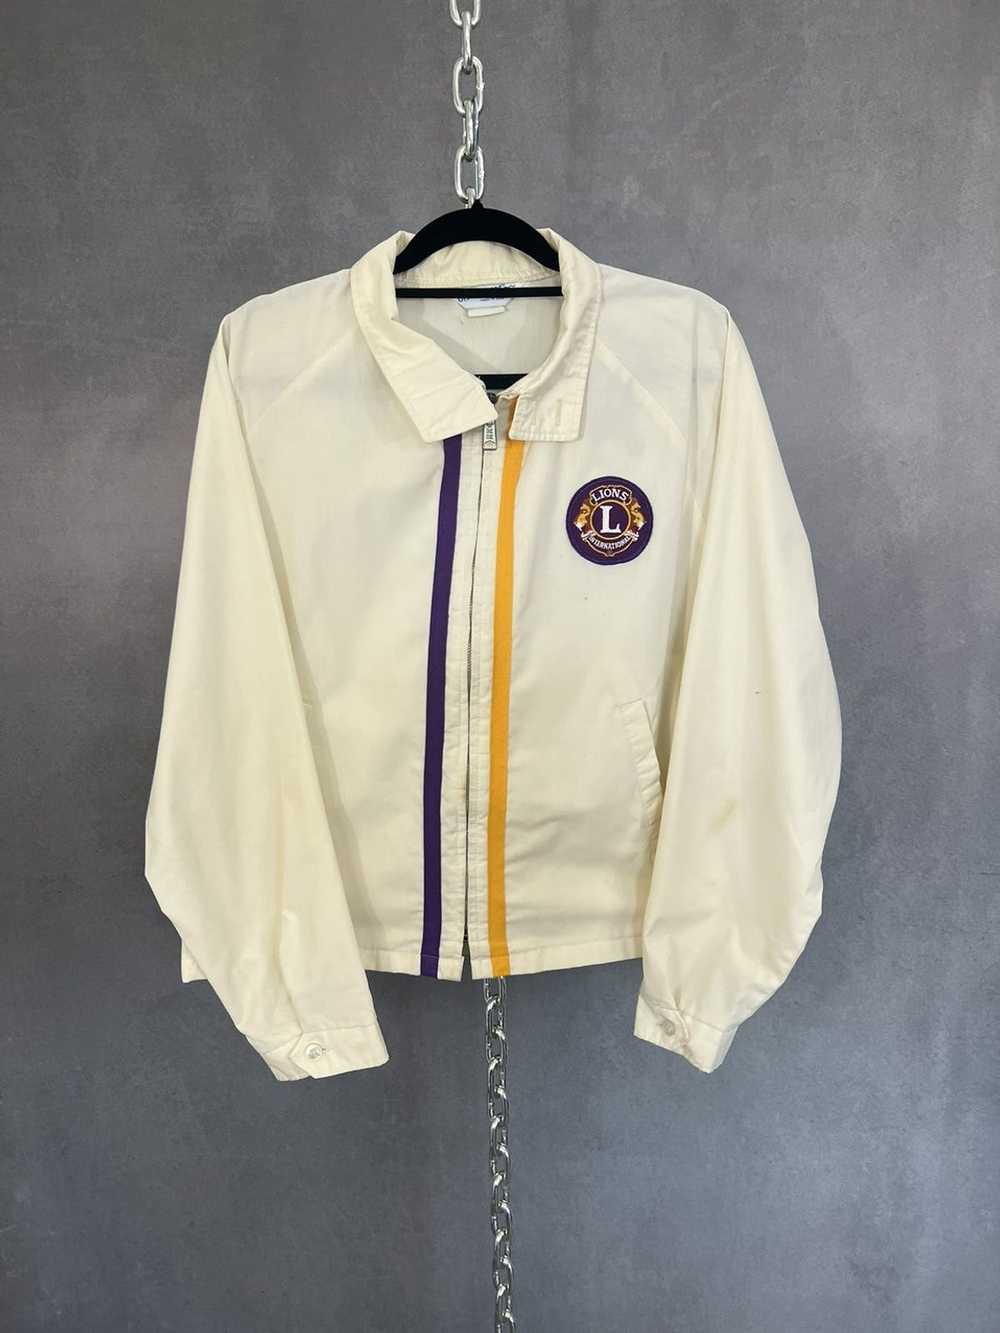 Vintage Vintage 70s 80s Work Shop Jacket Chainsti… - image 1